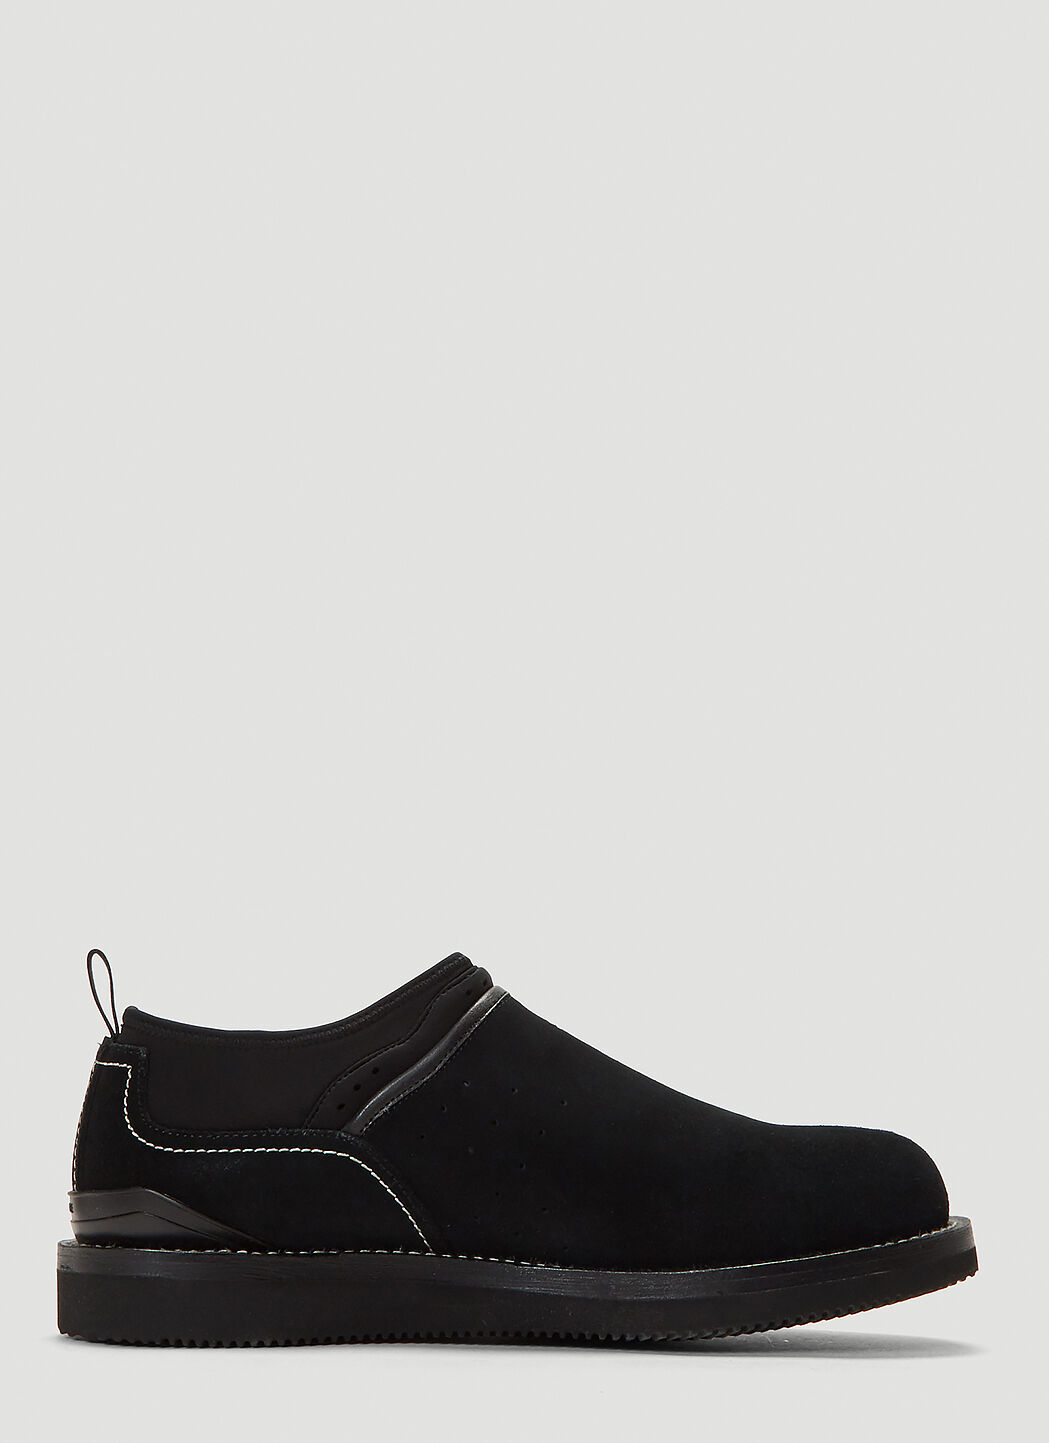 Suicoke SGY03 Slip-On Ankle Boots   Black sui0156003